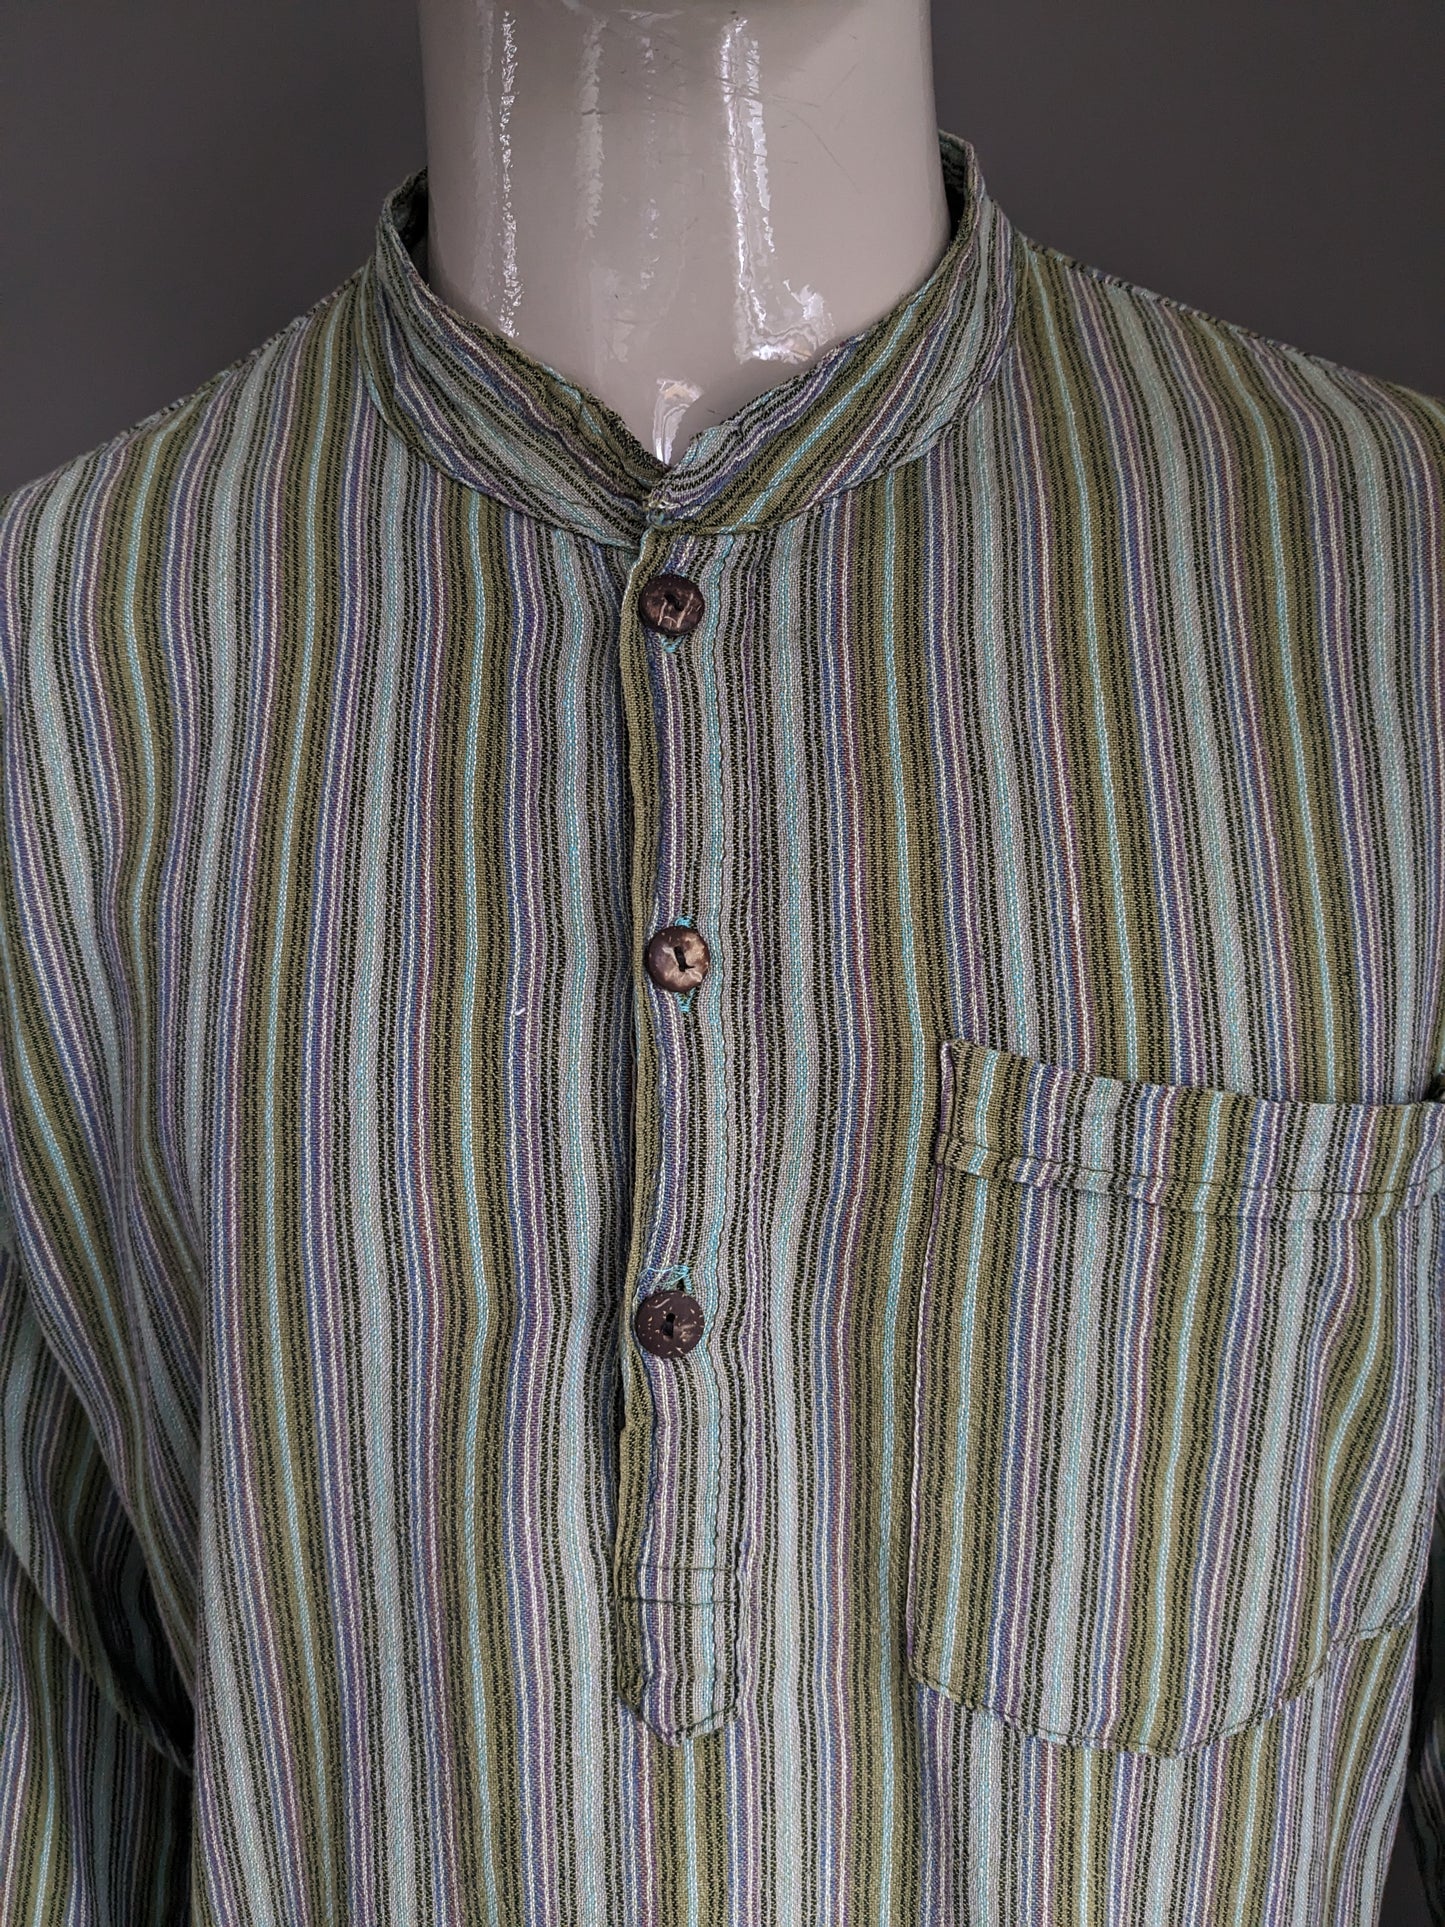 Vintage Polo -Pullover / Hemd mit erhöhtem / Bauern / Mao -Kragen. Grün lila braun blau mit Tasche gestreift. Größe xl.